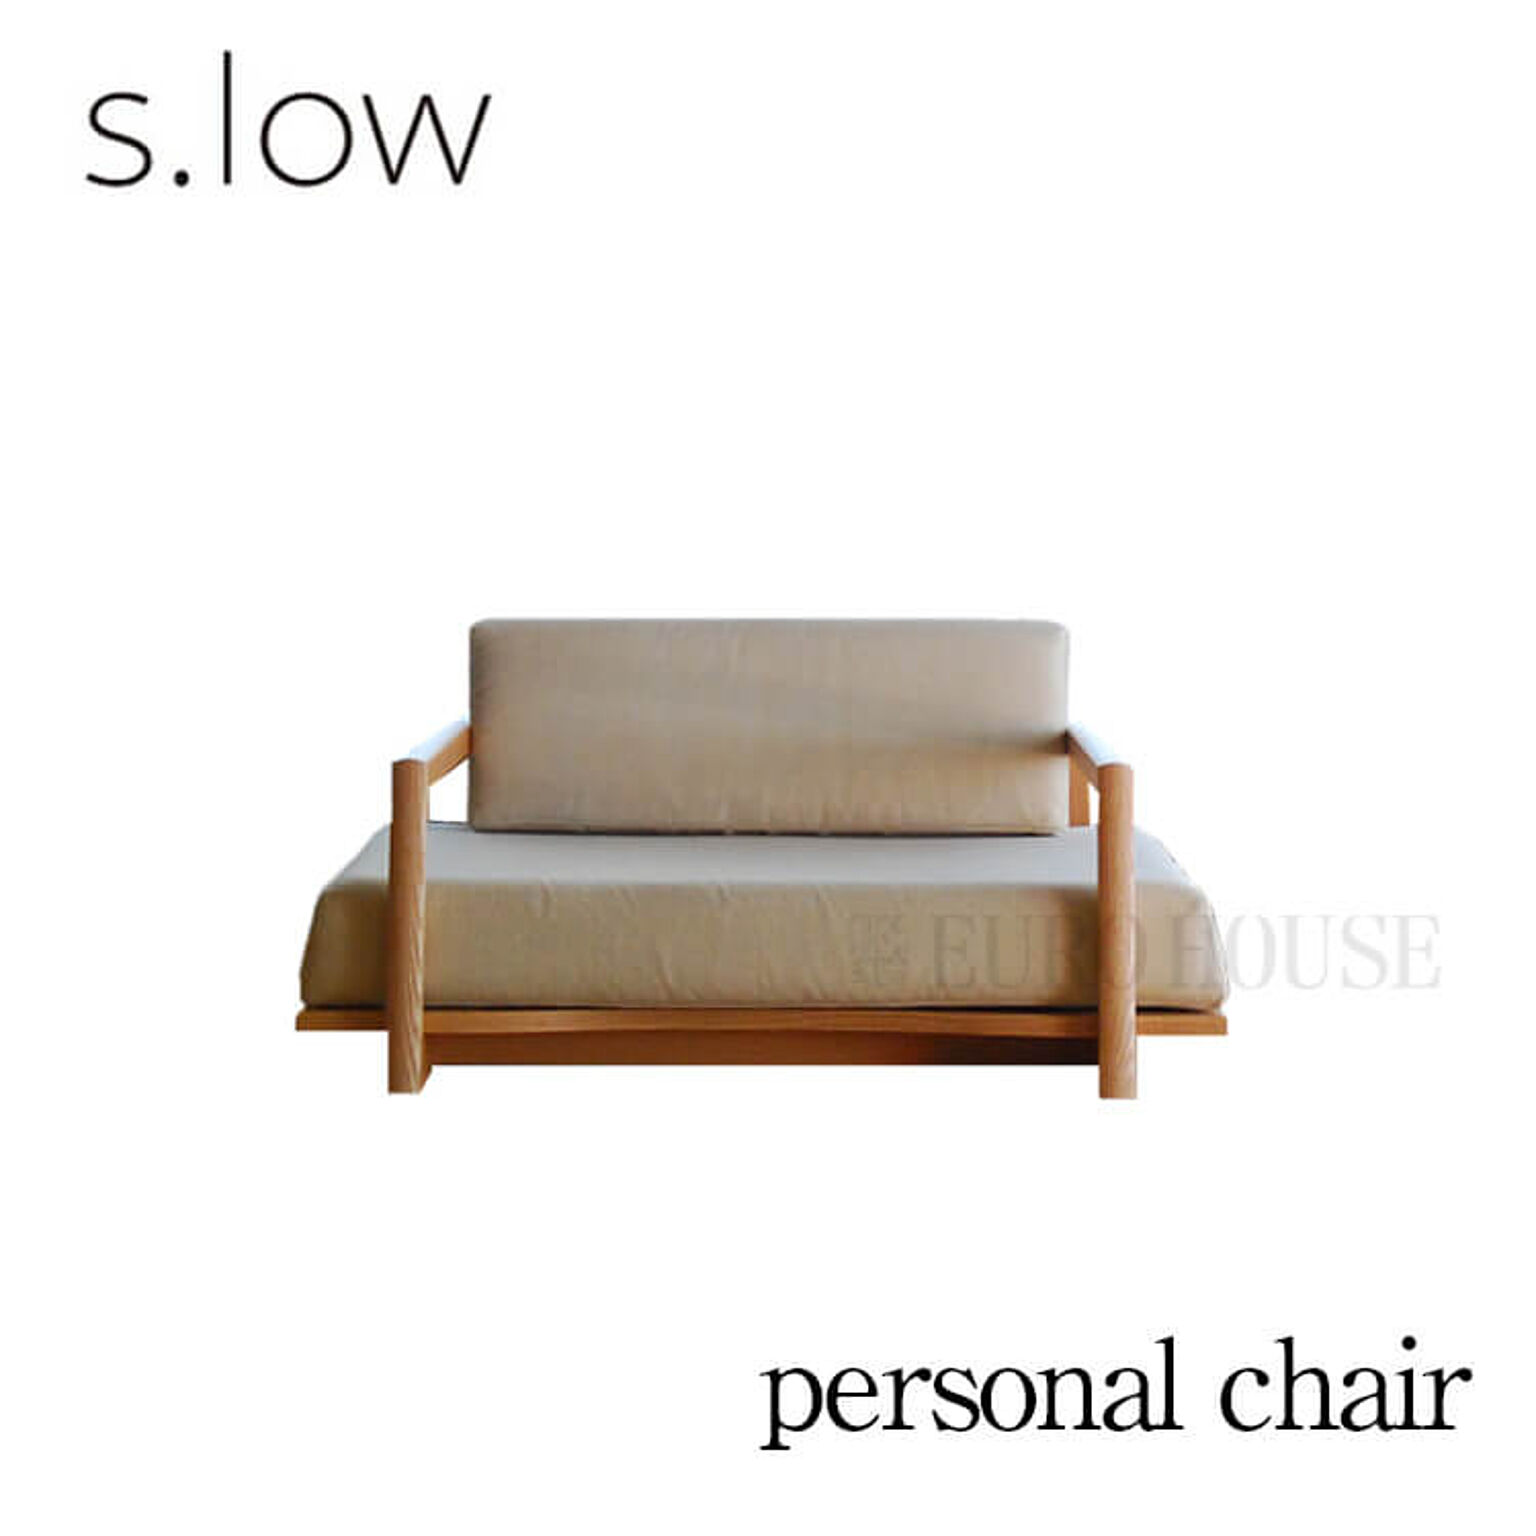 ソファ チェア パーソナルチェア s.low personal chair エスロウ オーク リビング シンプル 国産 日本製 モリタインテリア 受注生産品 